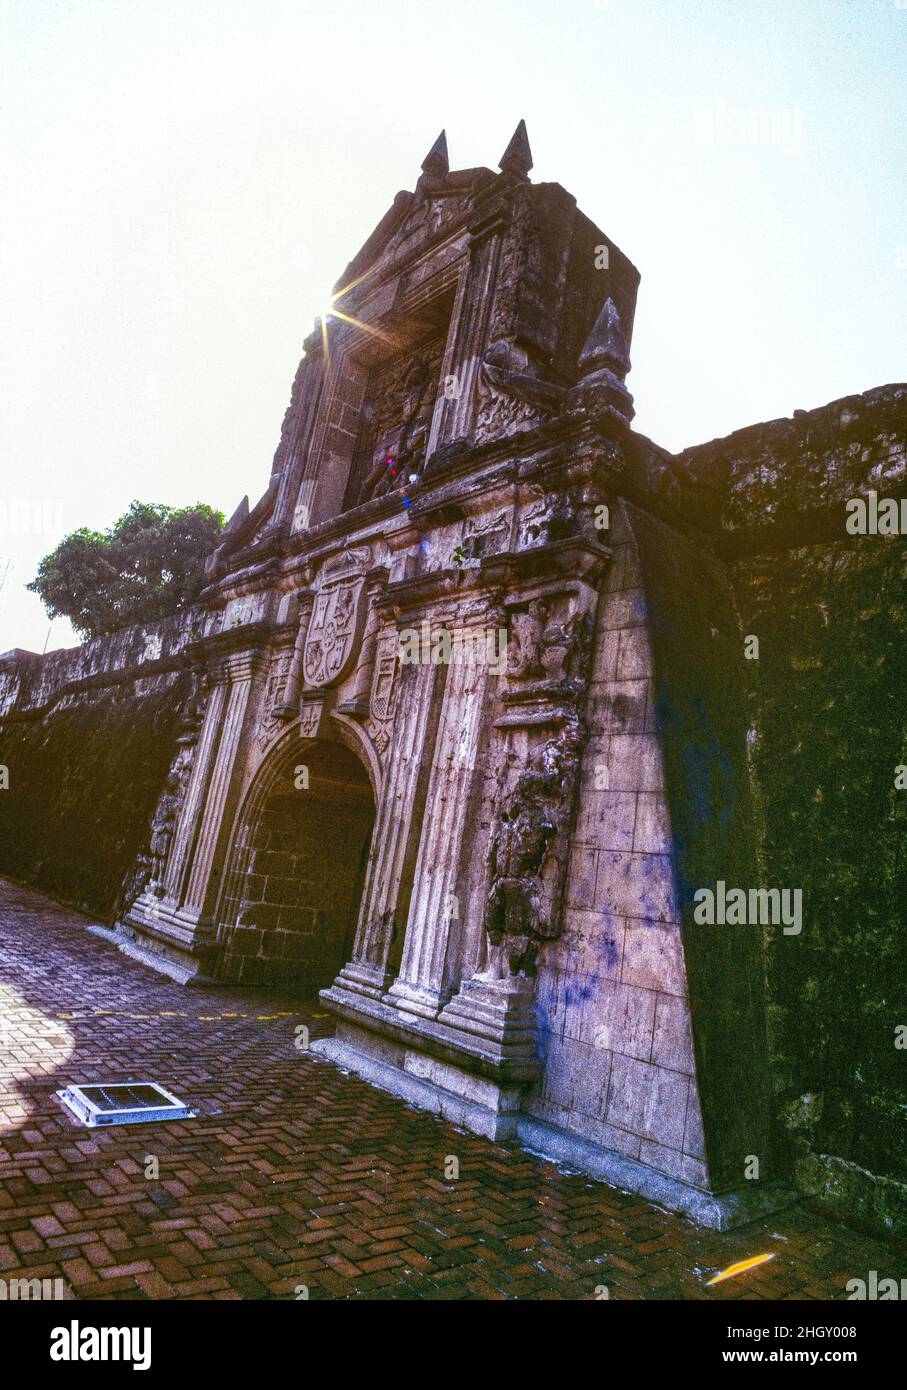 Il cancello d'ingresso principale per Fort Santiago a Manila, nelle Filippine. La storica cittadella fu costruita nel 1593 dal navigatore spagnolo e governatore Miguel López de Legazpi per la città di Manila, di recente costituzione. La fortezza si trova a Intramuros, la città fortificata di Manila. E' uno dei siti storici più importanti nelle Filippine. Molte vite sono state perse nelle sue prigioni durante l'impero spagnolo e la seconda guerra mondiale José Rizal, uno degli eroi nazionali delle Filippine, è stato imprigionato qui prima della sua esecuzione nel 1896. Foto Stock